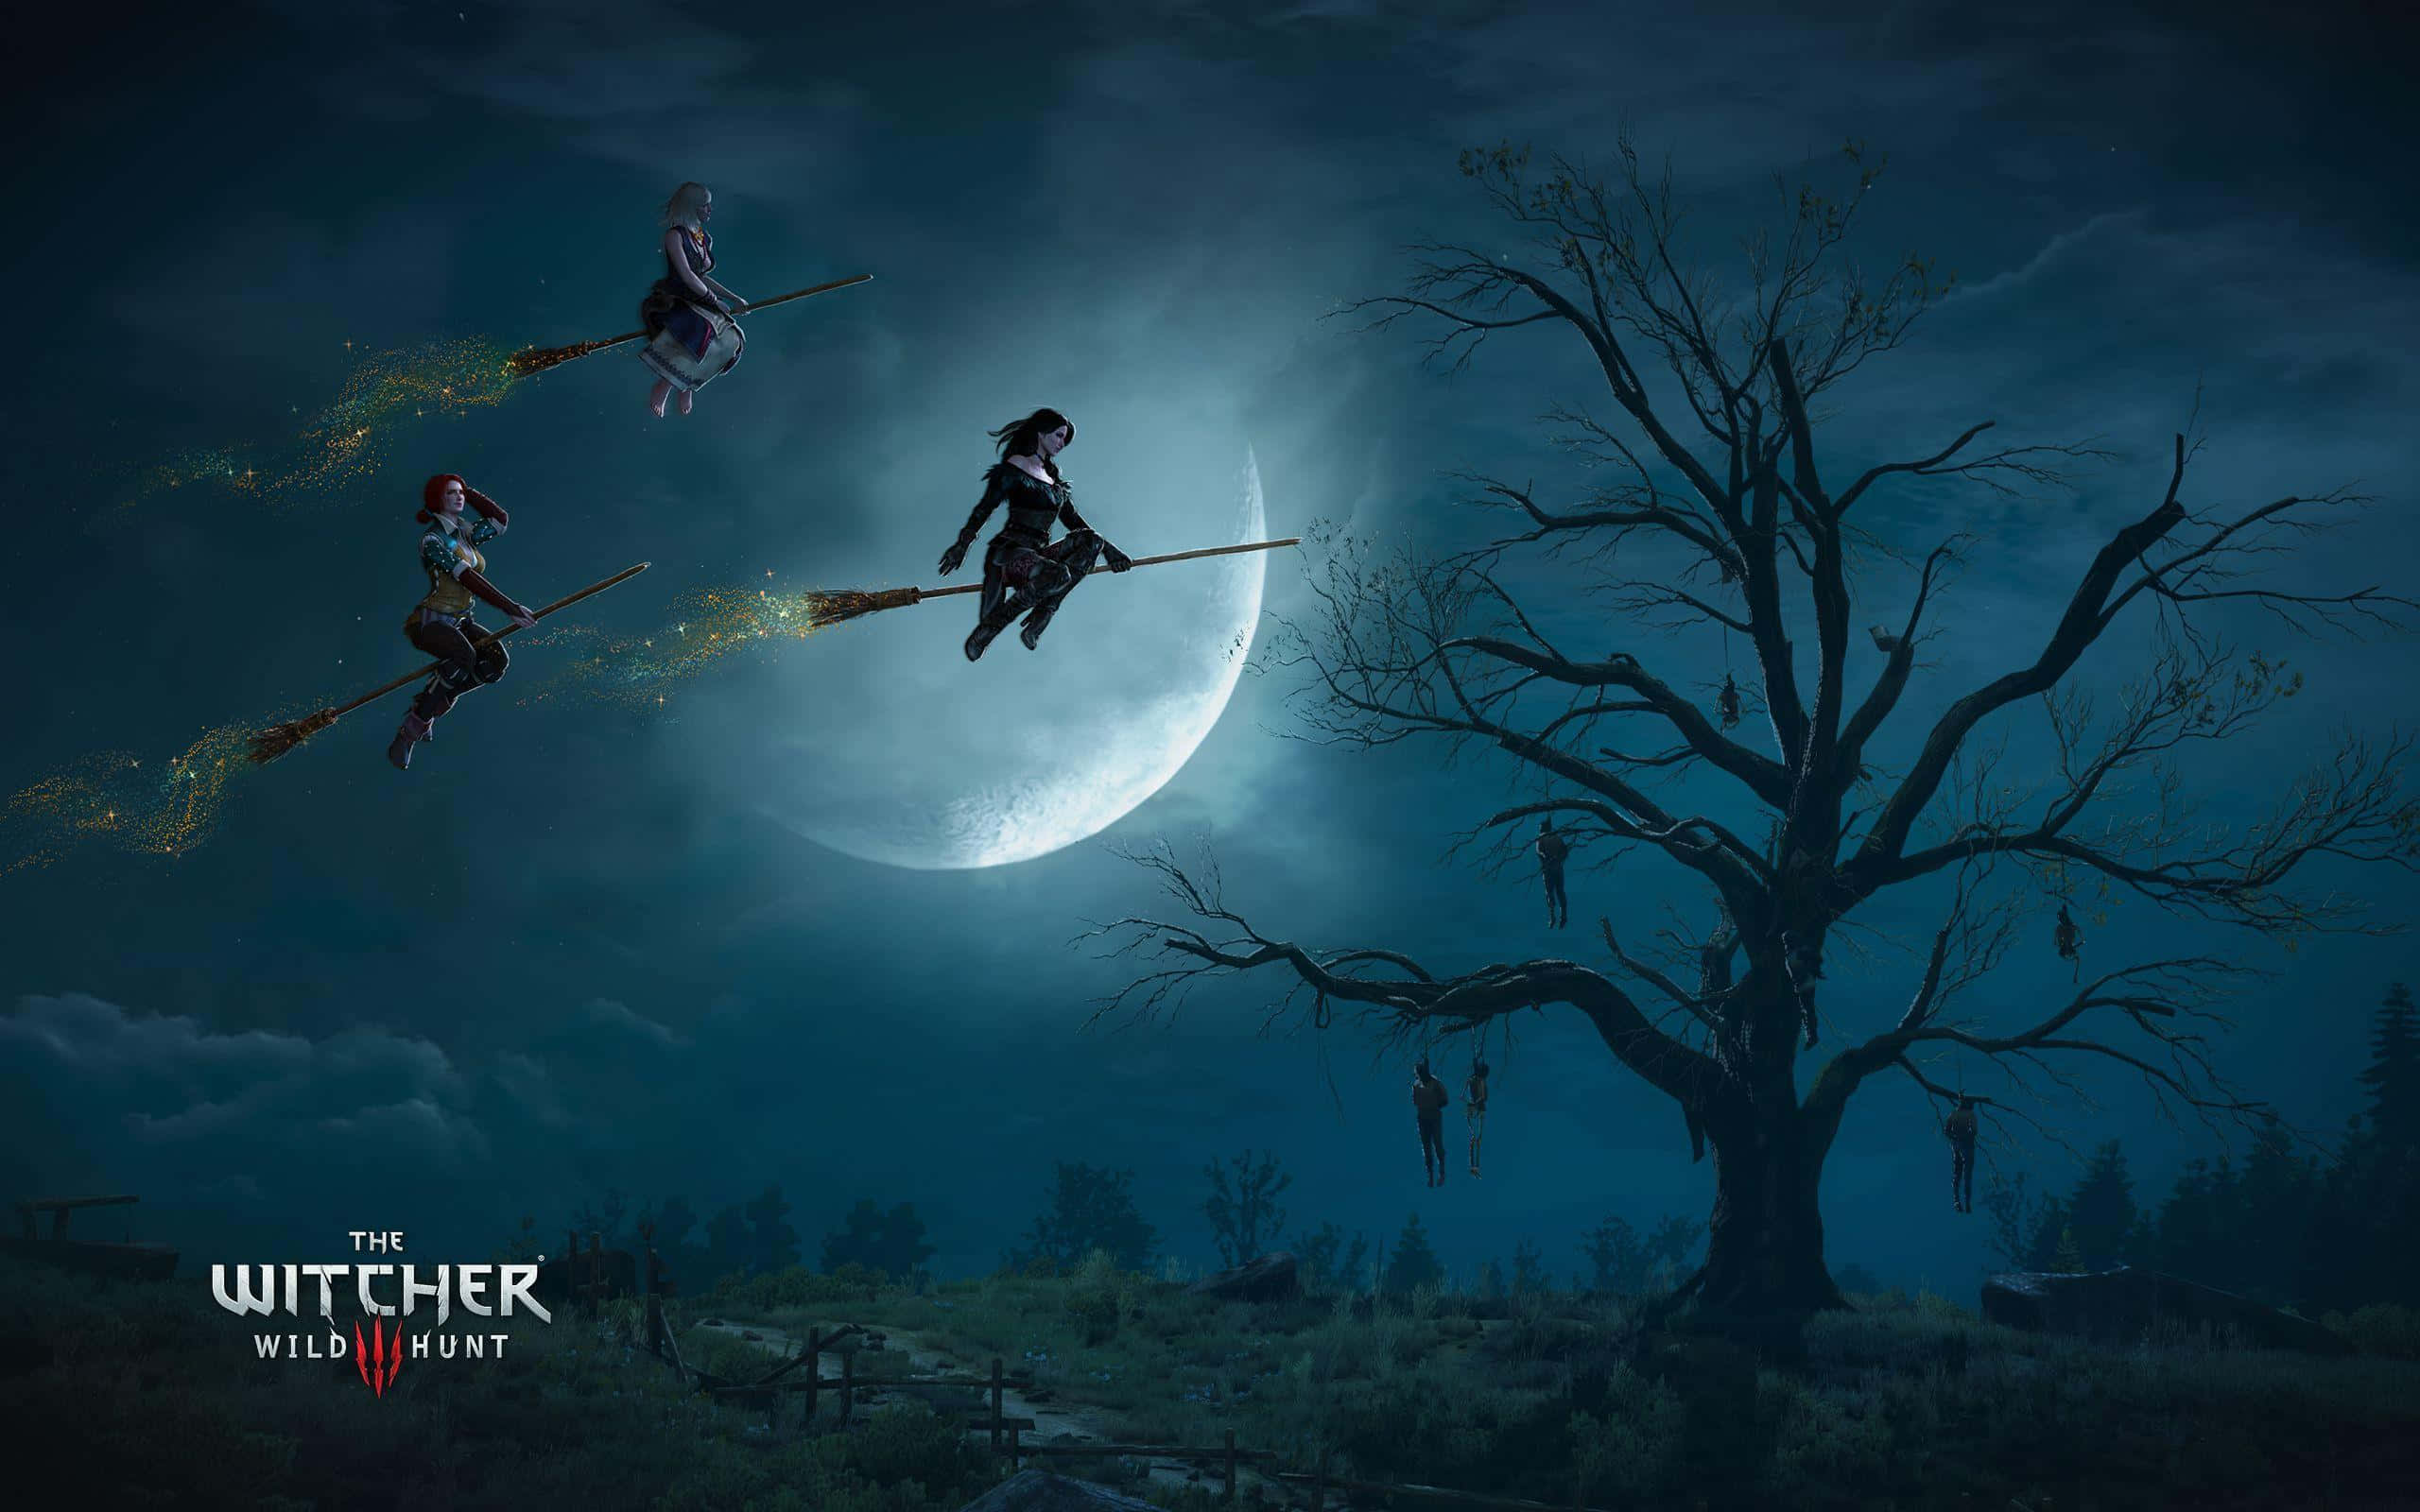 The Witcher - Dark Forest Battle